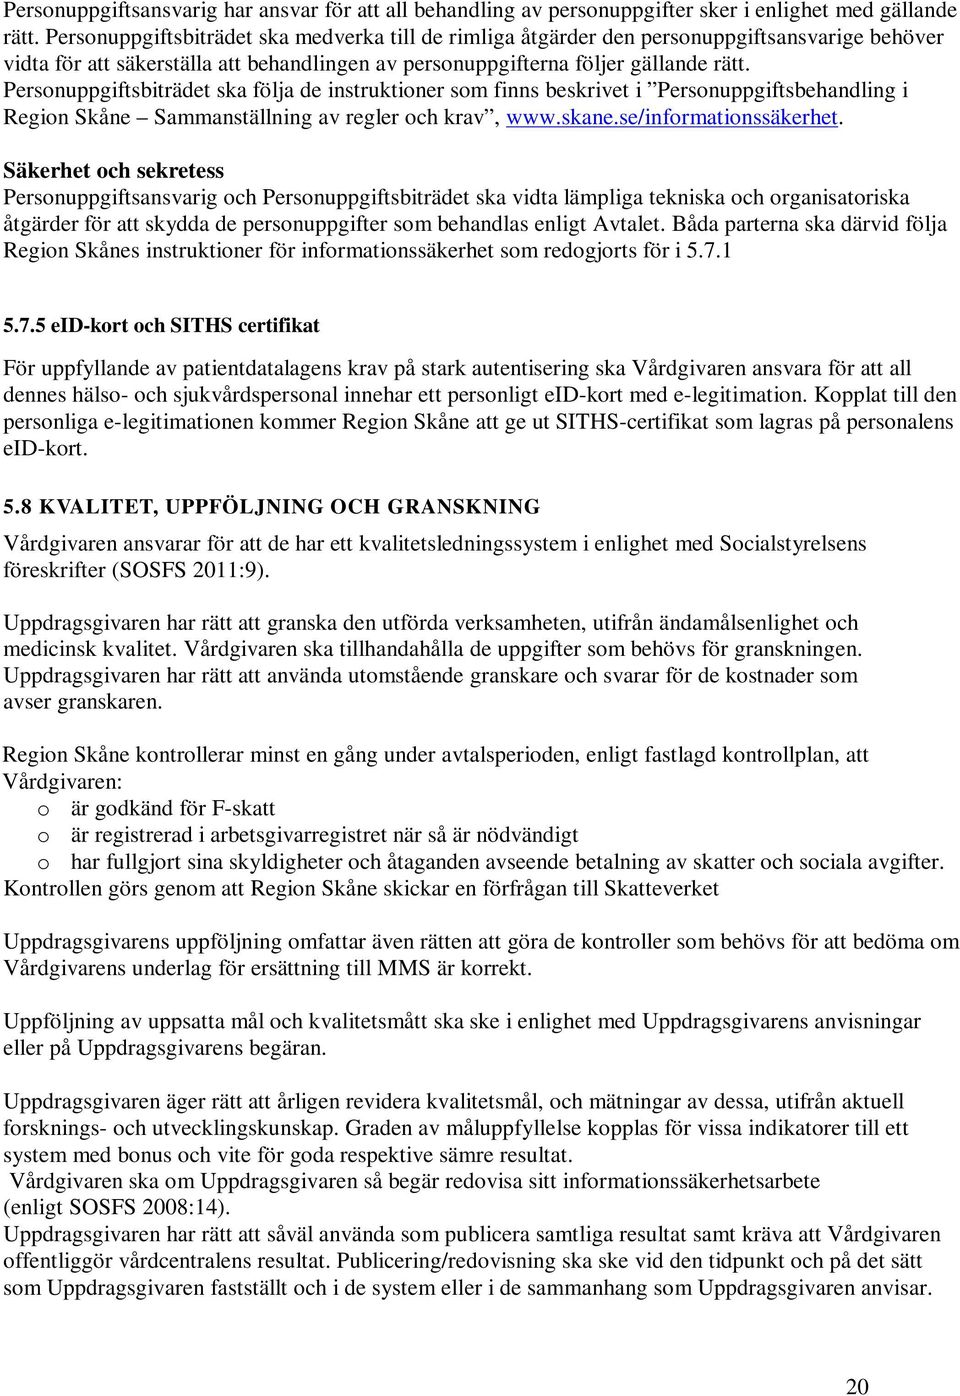 Personuppgiftsbiträdet ska följa de instruktioner som finns beskrivet i Personuppgiftsbehandling i Region Skåne Sammanställning av regler och krav, www.skane.se/informationssäkerhet.